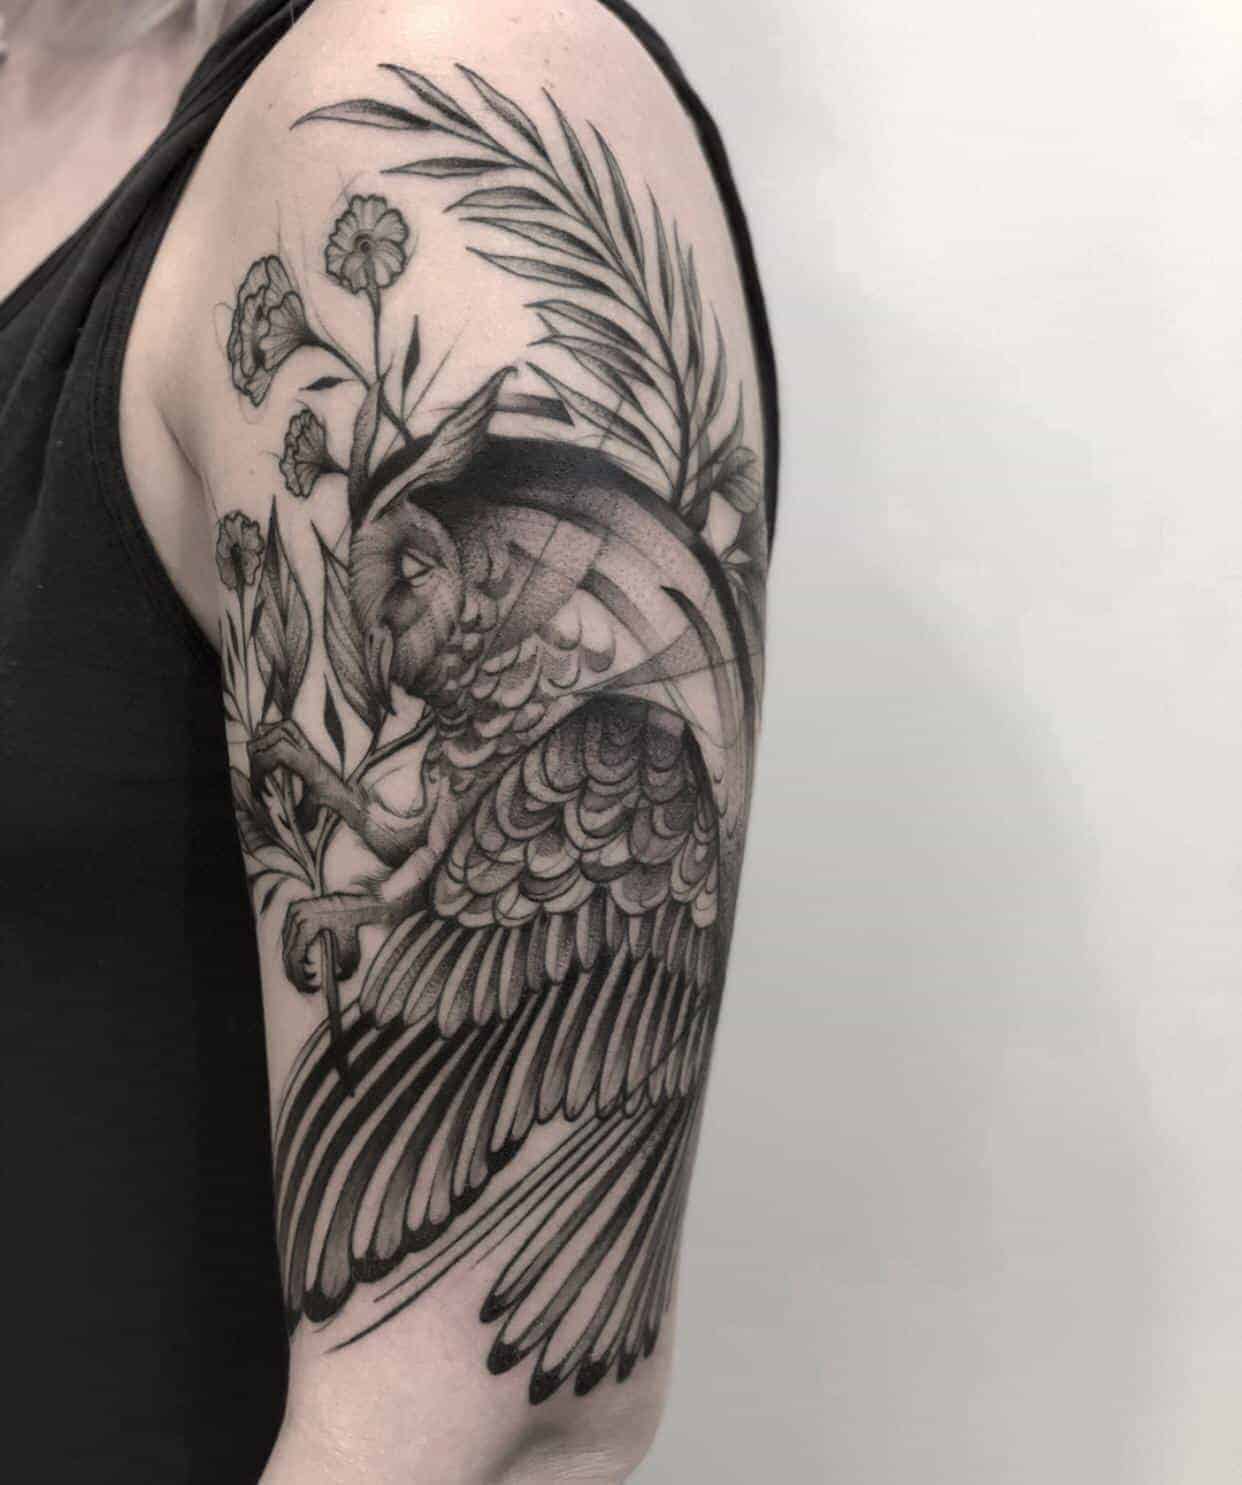 Tattoo design #9 - OWL by EirianeToT on DeviantArt